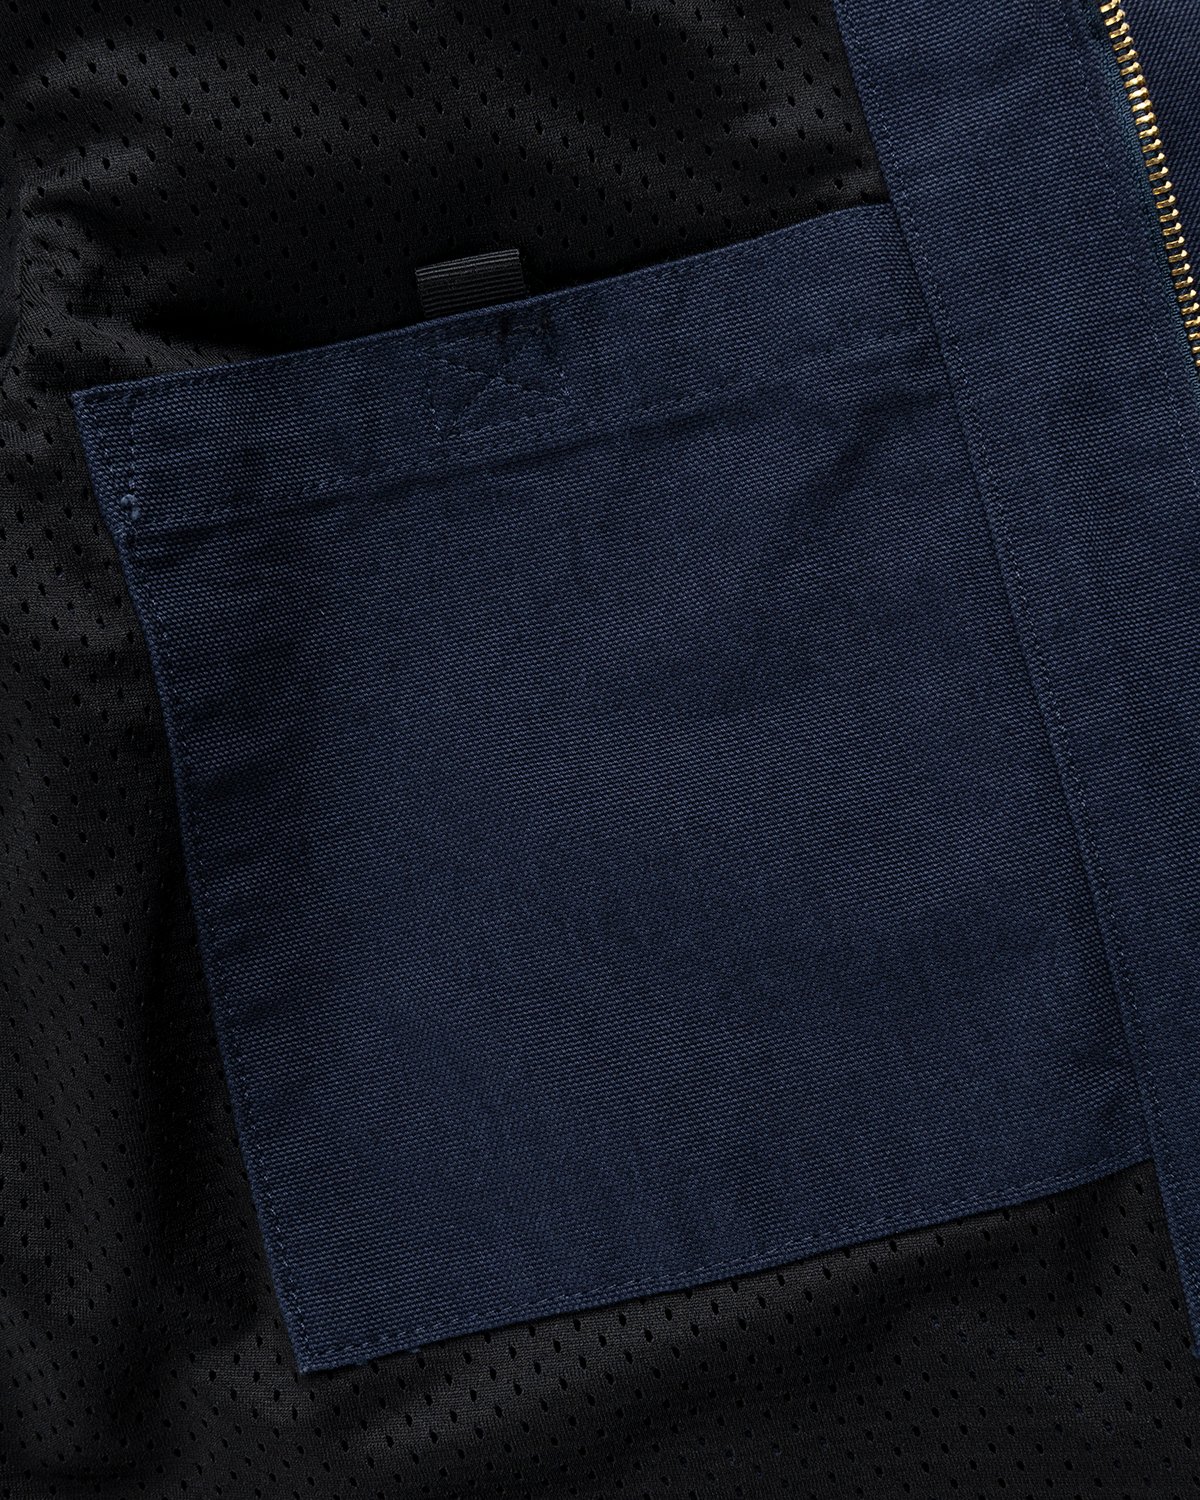 Carhartt WIP - Detroit Jacket Dark Navy Black Rinsed - Clothing - Blue - Image 5